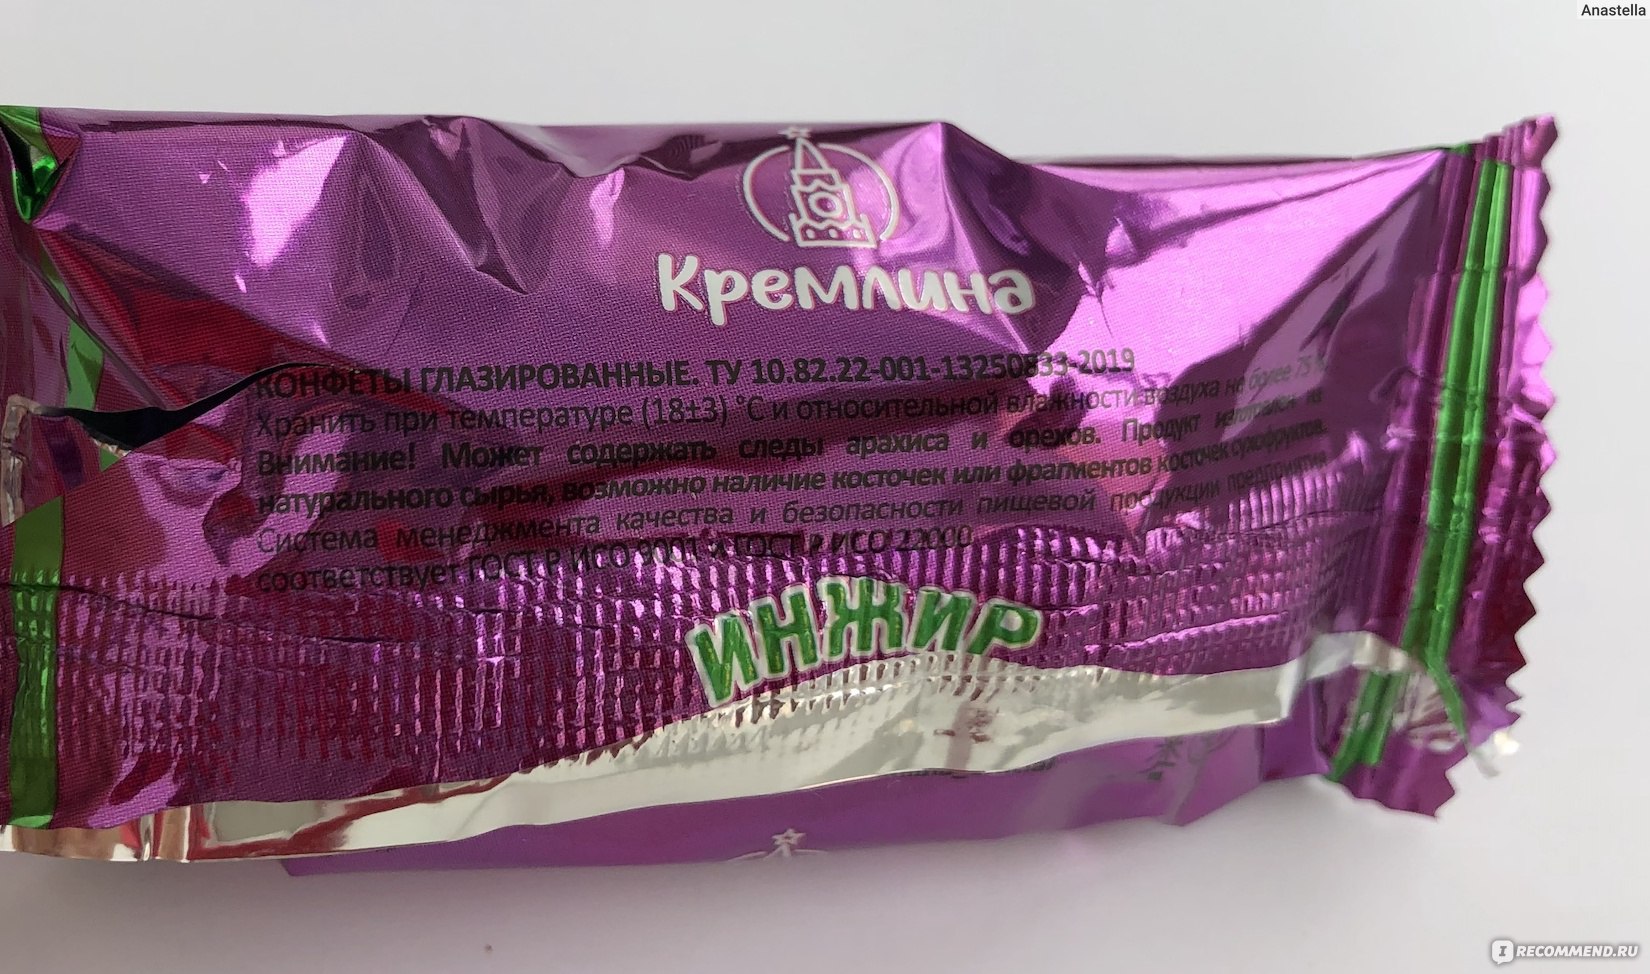 Конфеты ЗАО "Конкорд" "Кремлина" Инжир в шоколадной глазури фото